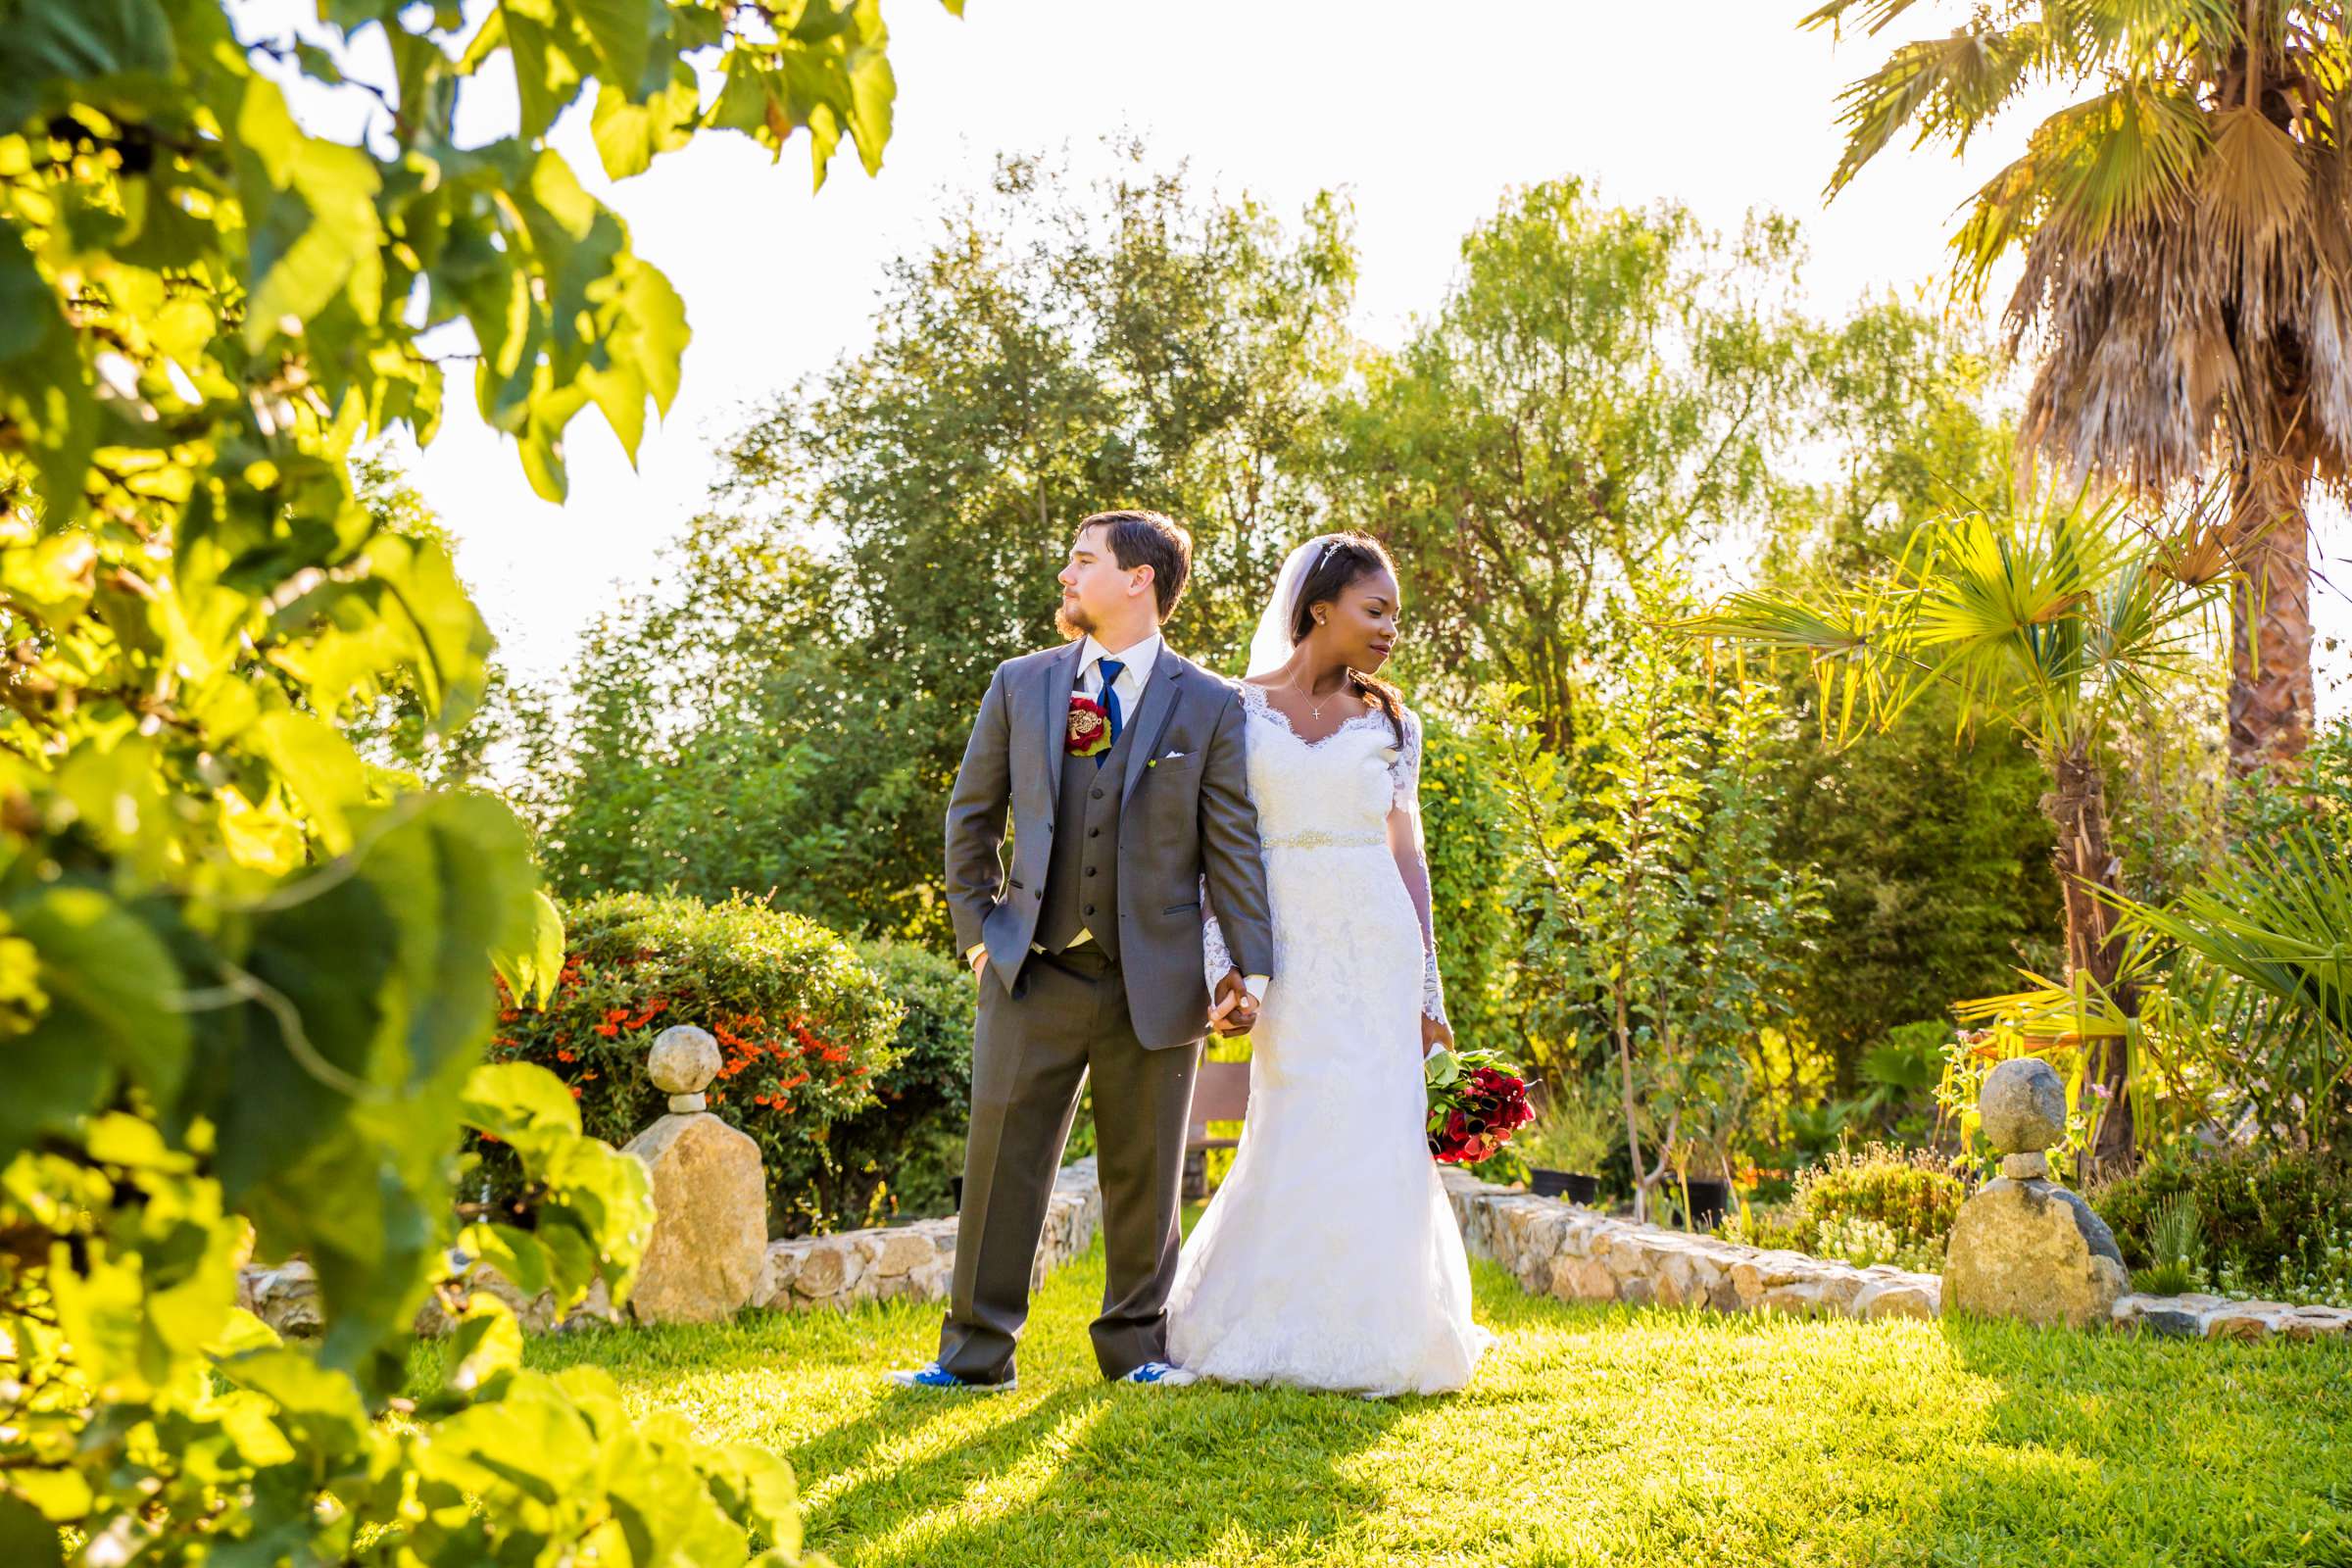 Fallbrook Hacienda Wedding, Elizabeth and Nicholas Wedding Photo #425213 by True Photography